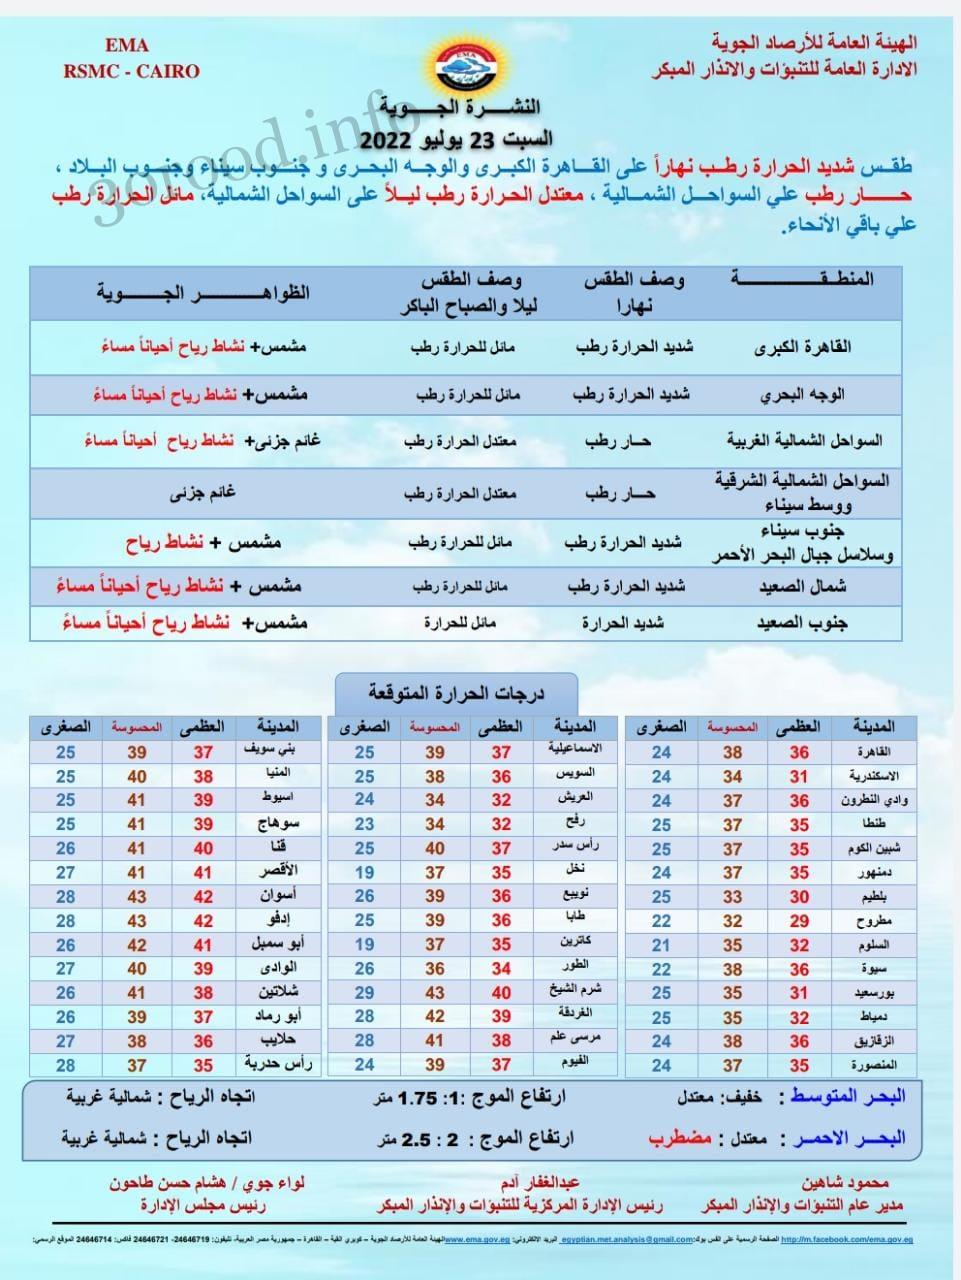 اخبار الطقس فى مصر السبت 23 يوليو 2022 النشرة الجوية فى مصر